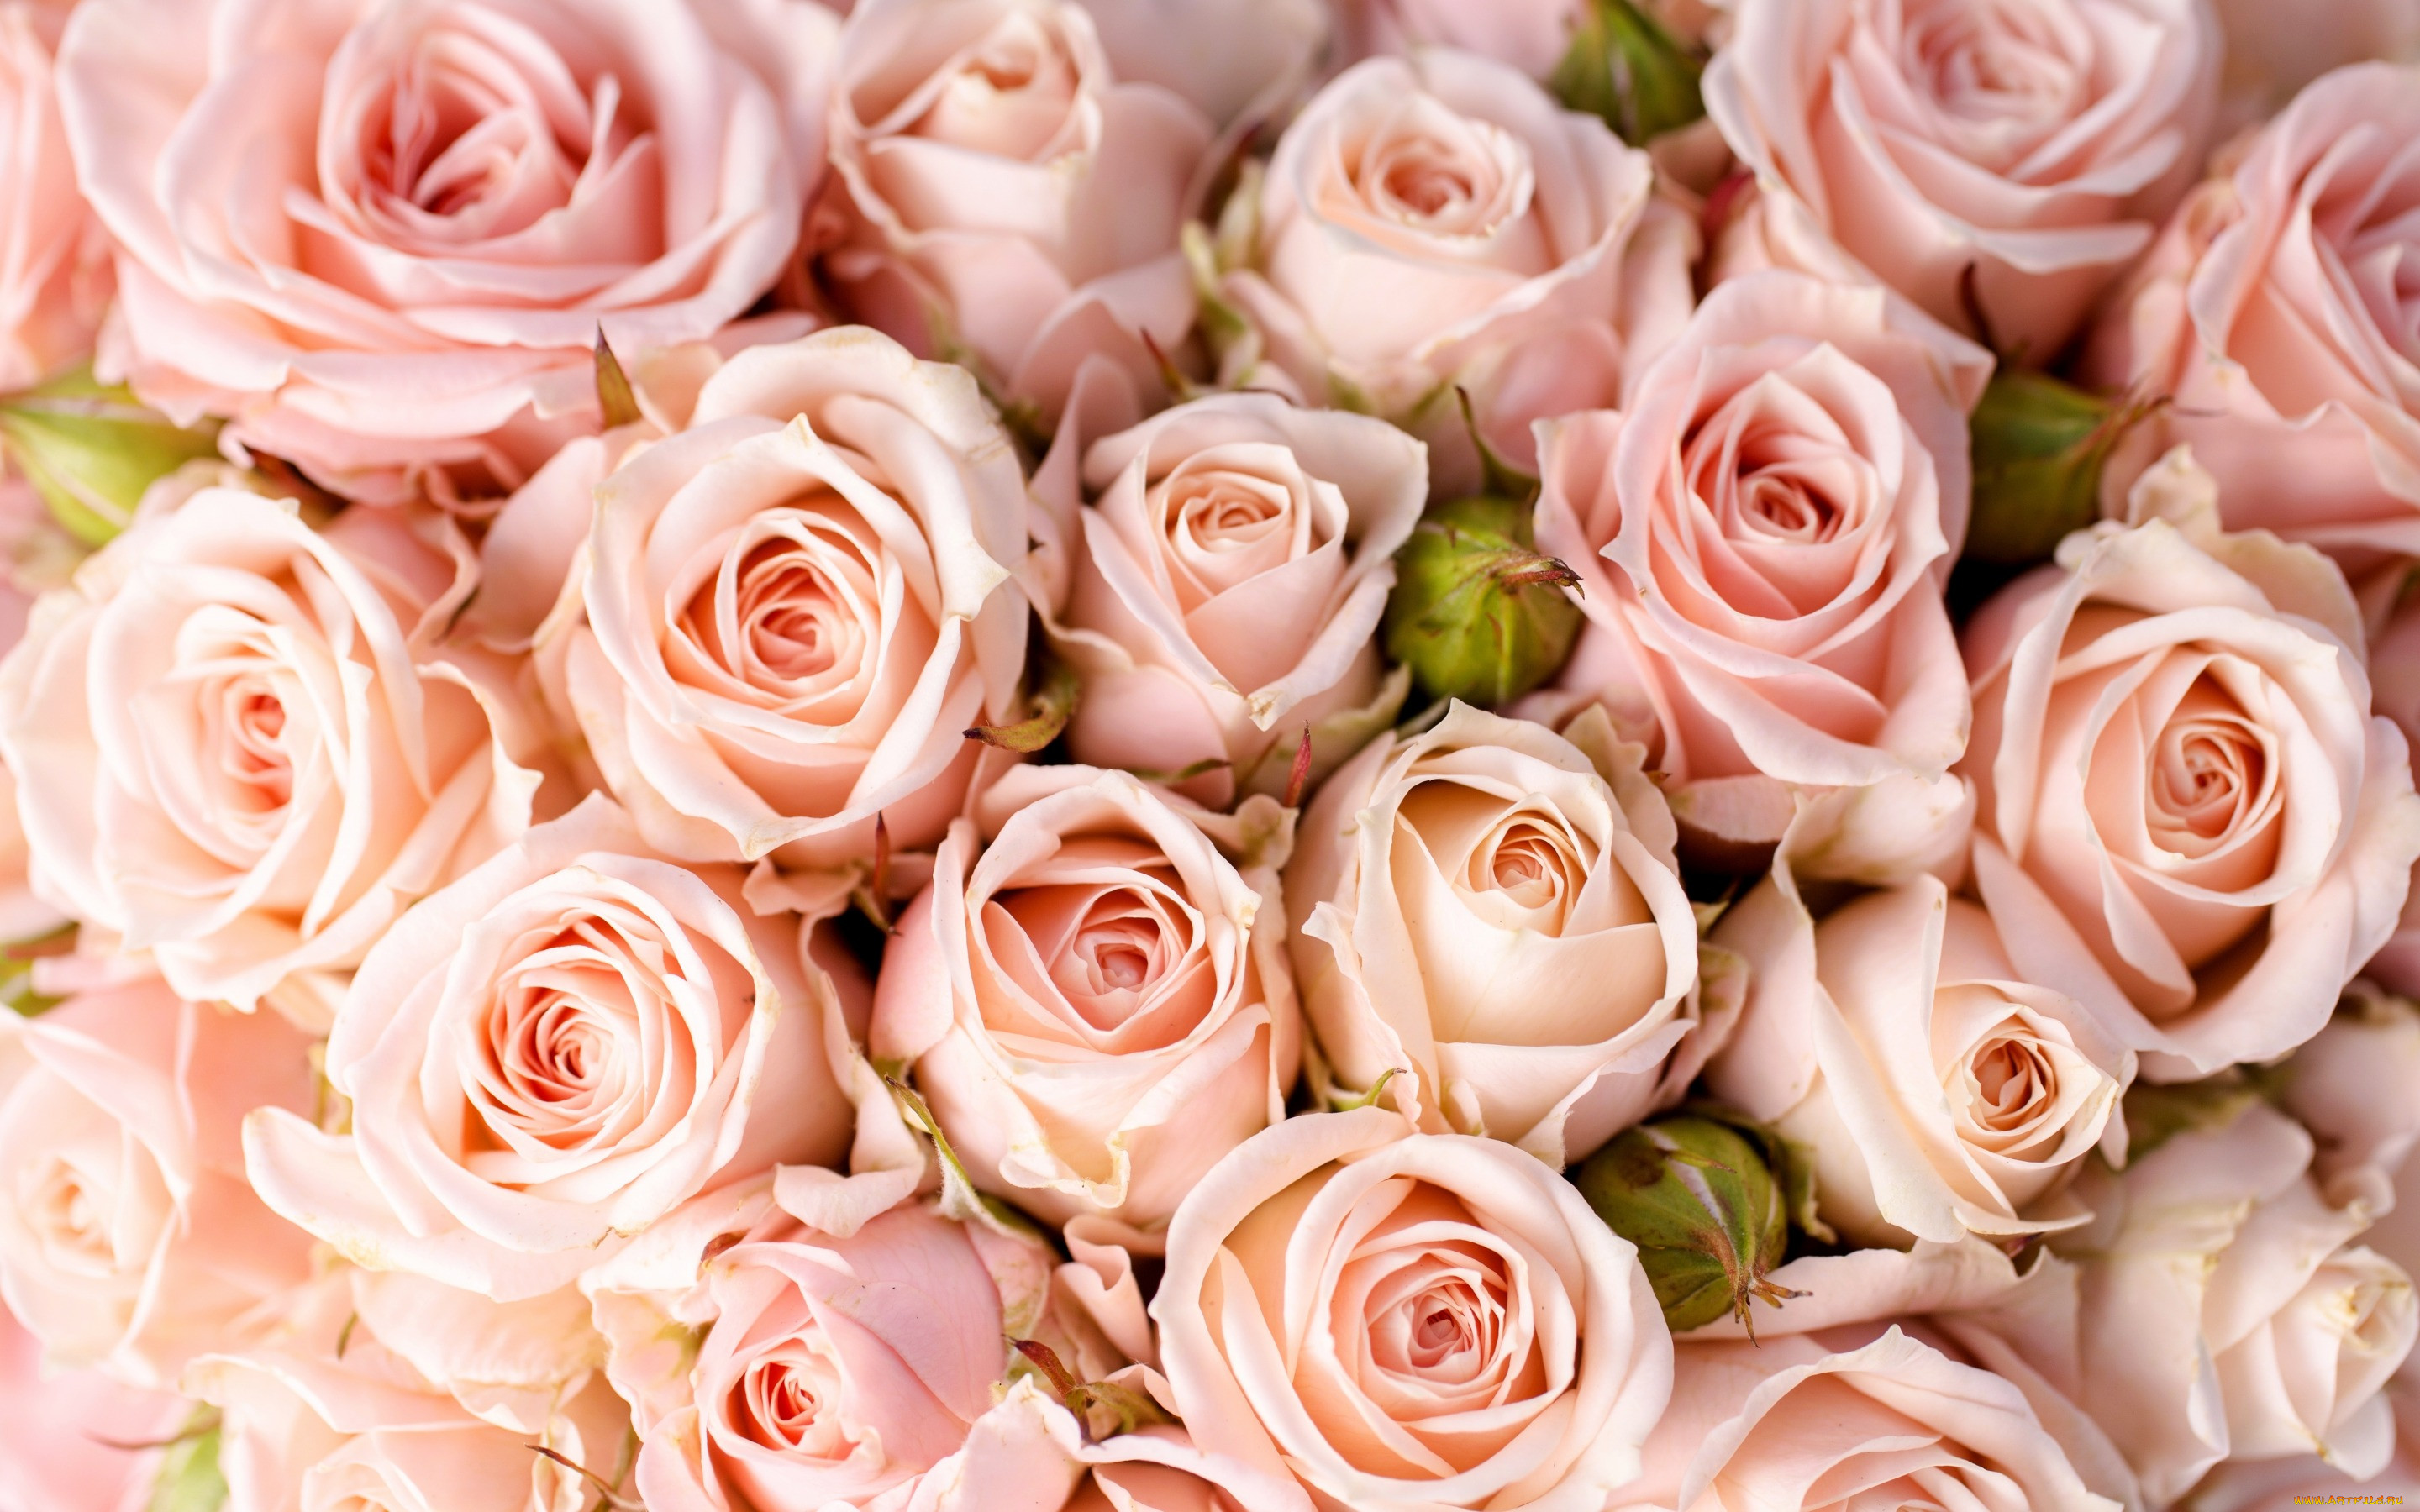 Обои Цветы Розы, обои для рабочего стола, фотографии цветы, розы, bouquet,  roses, flowers, букет Обои для рабочего стола, скачать обои картинки  заставки на рабочий стол.